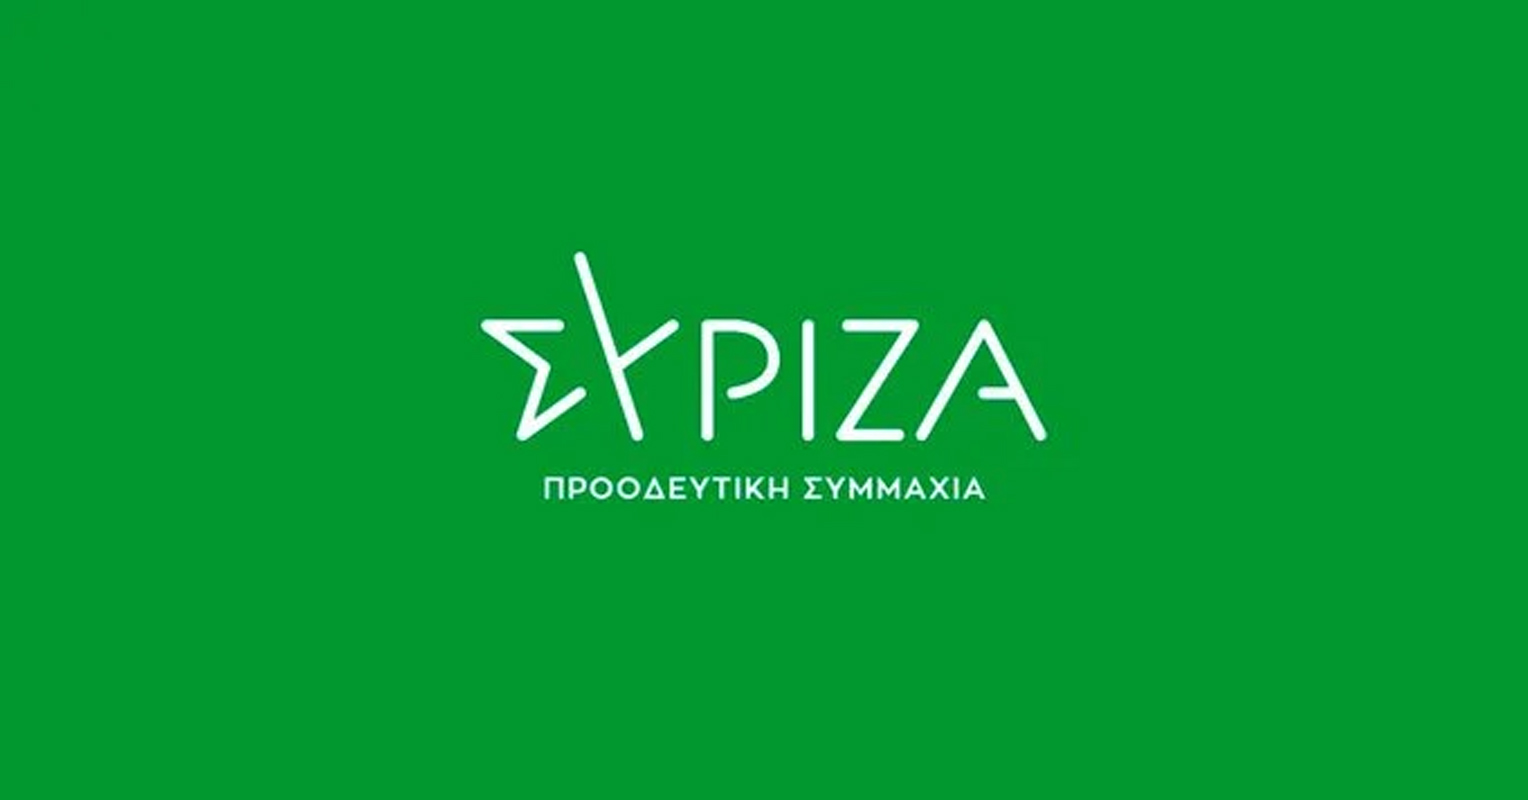 ΣΥΡΙΖΑ: «Αφήνουμε την σοκαριστική παραδοχή Γεωργιάδη στην κρίση πολιτών, Δικαιοσύνης και Μητσοτάκη»